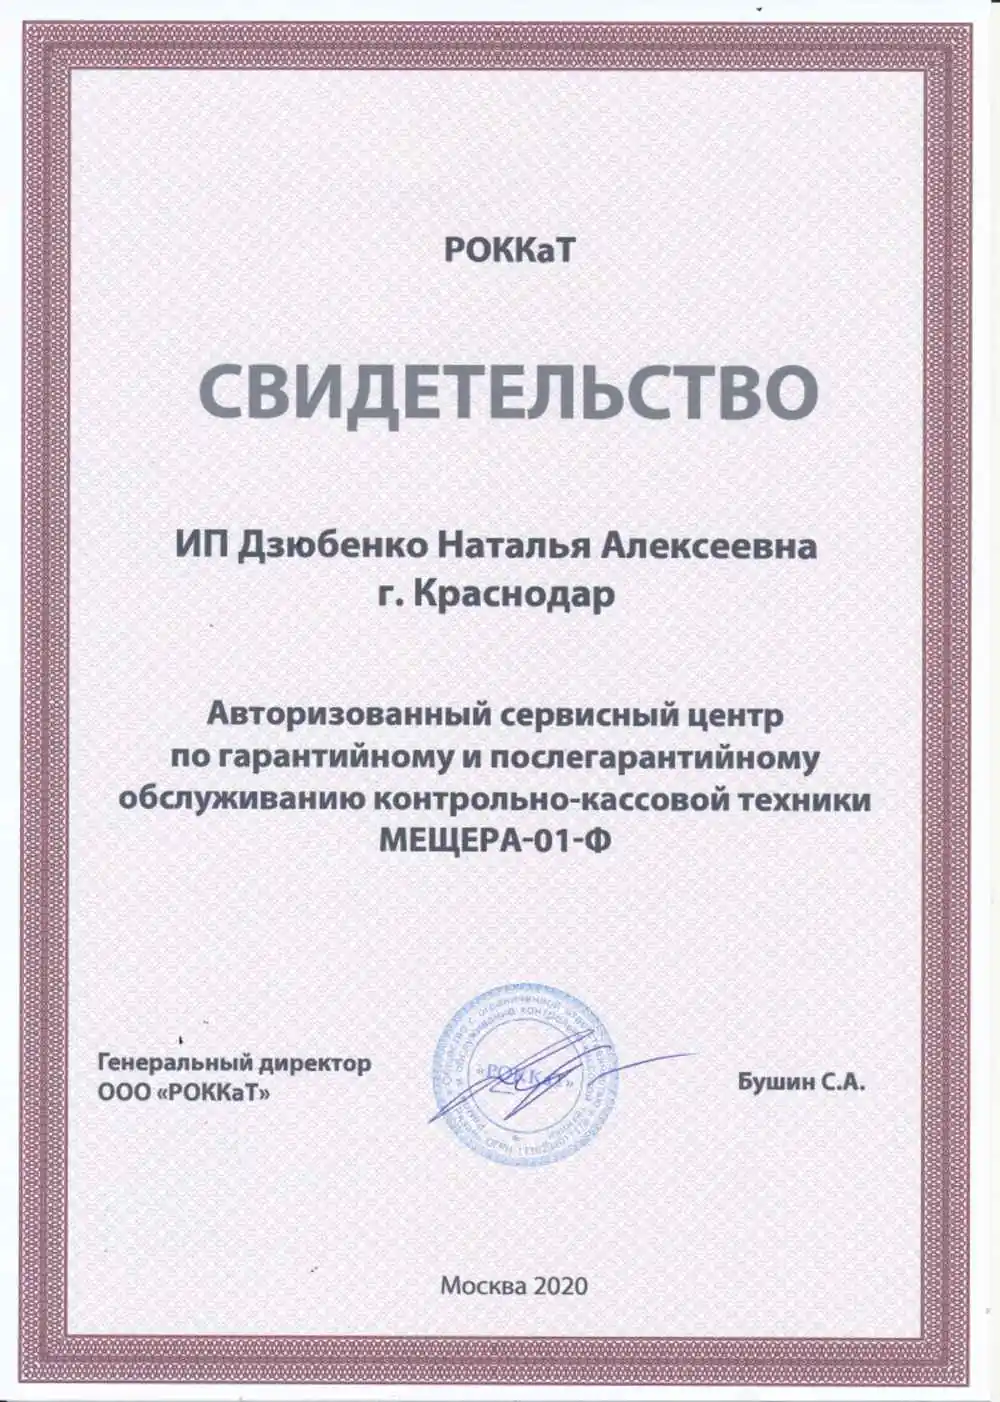 Сертификат РОККаТ